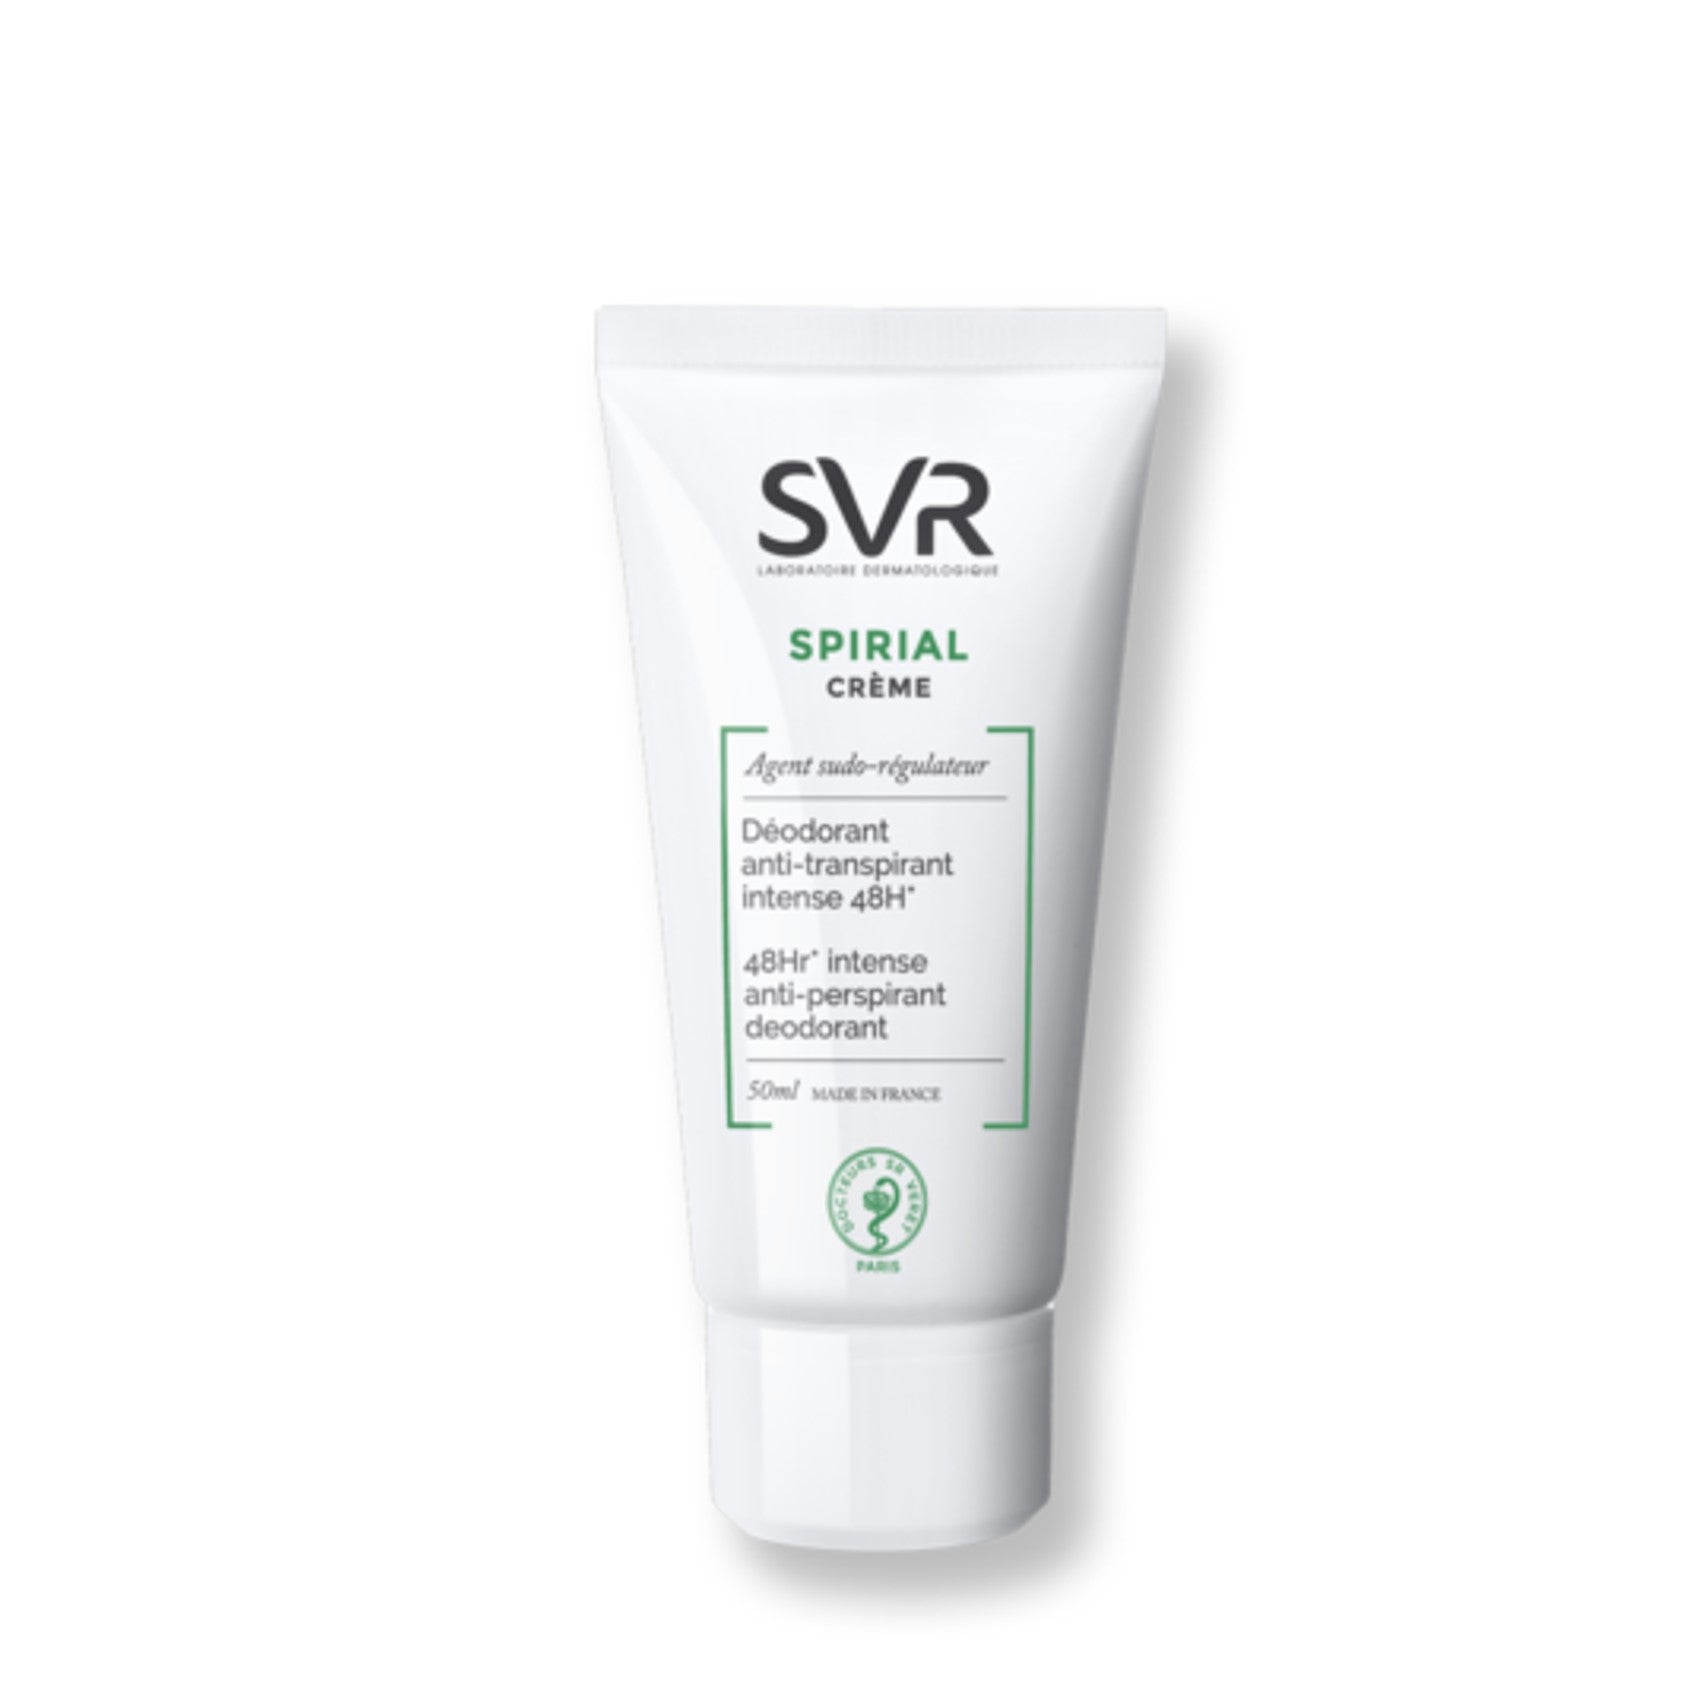 SVR Spirial Cream 48H Intense Anti-Perspirant Deodorant 50ml